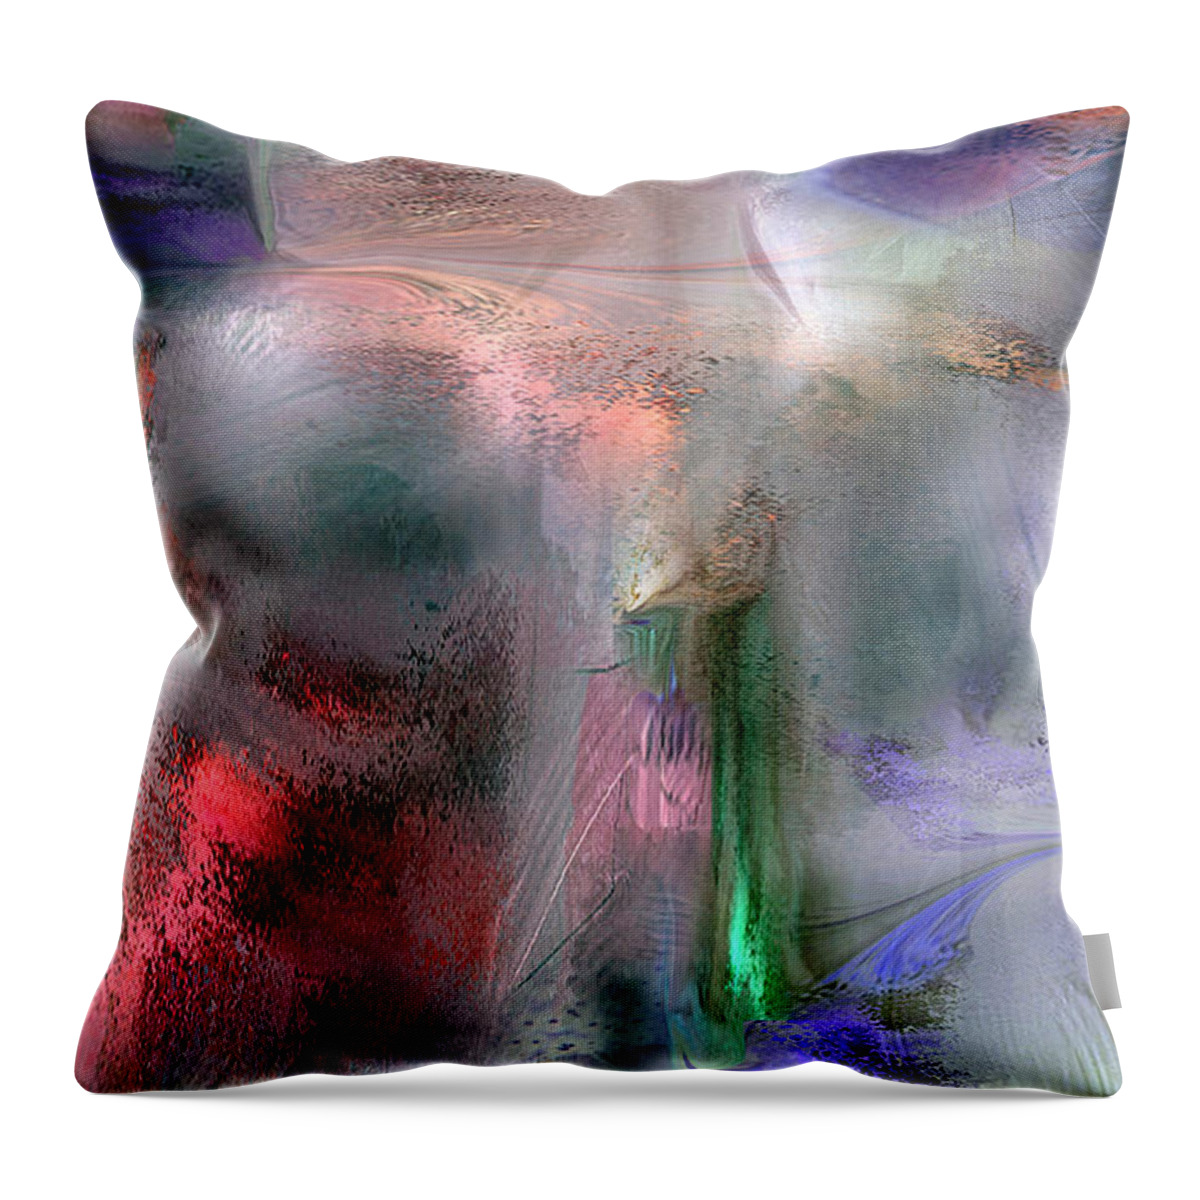 Design Throw Pillow featuring the digital art Spikemoss 2 by Davina Nicholas